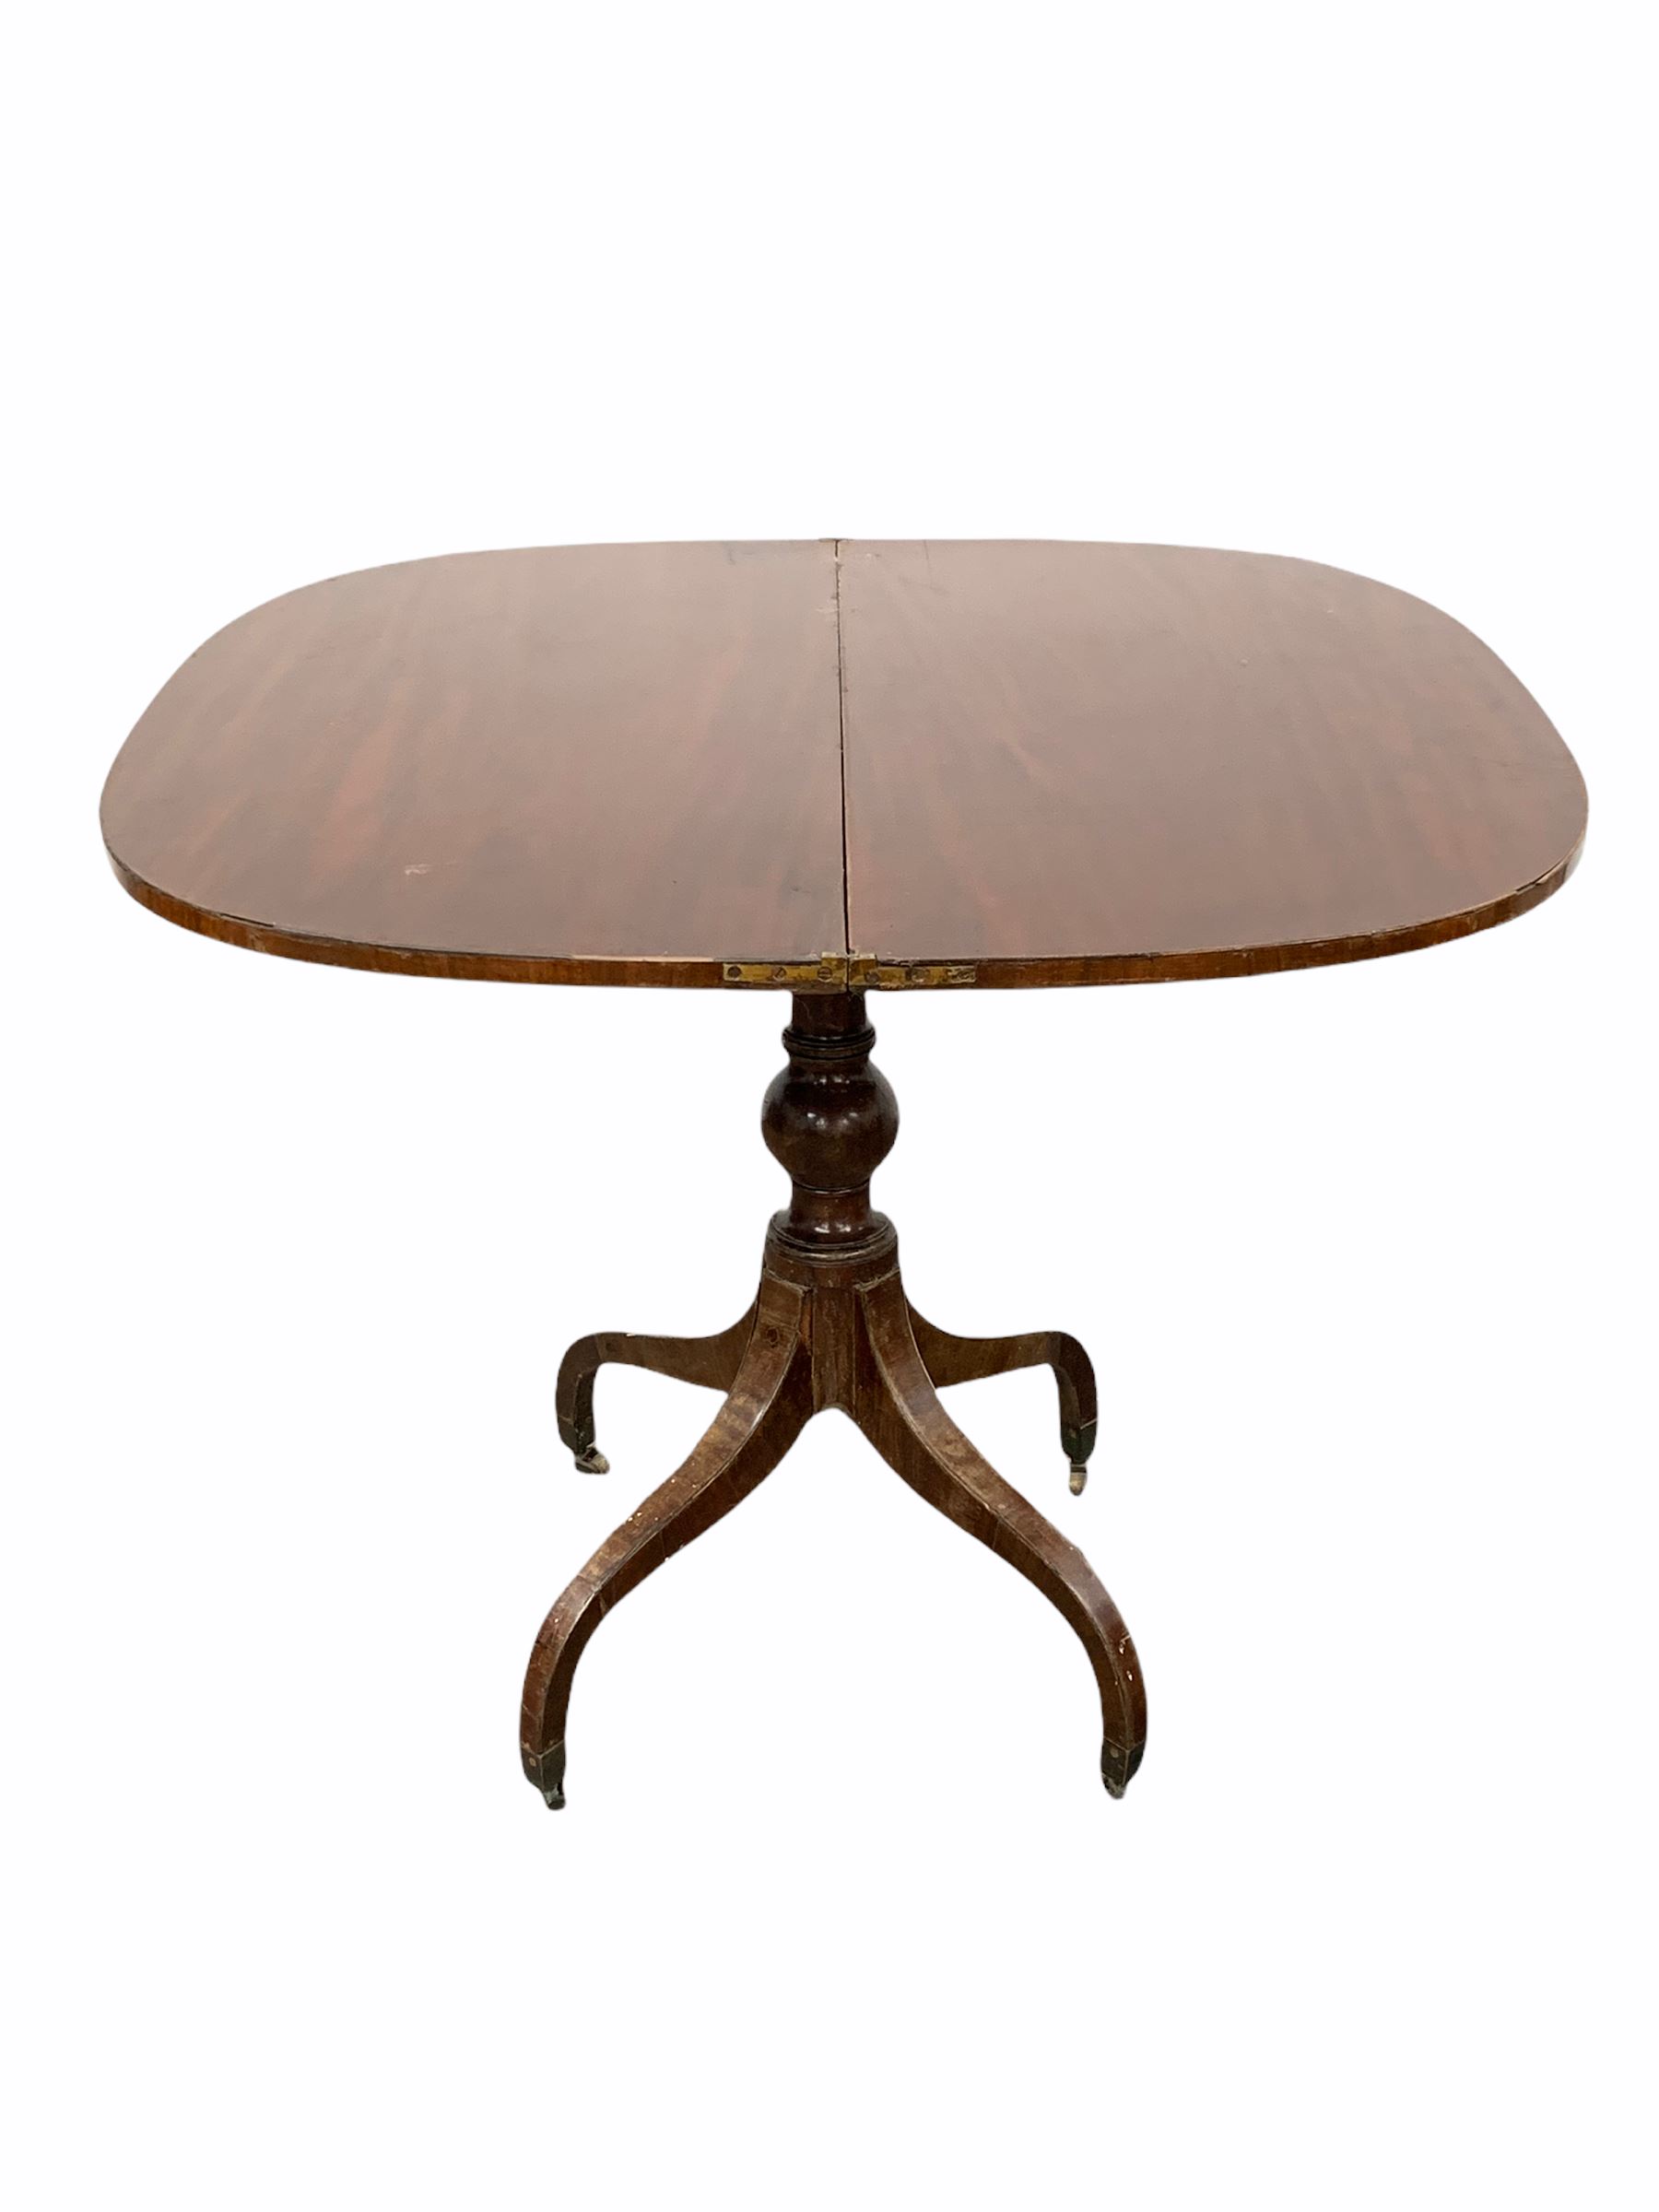 Regency mahogany fold over tea table - Image 2 of 3